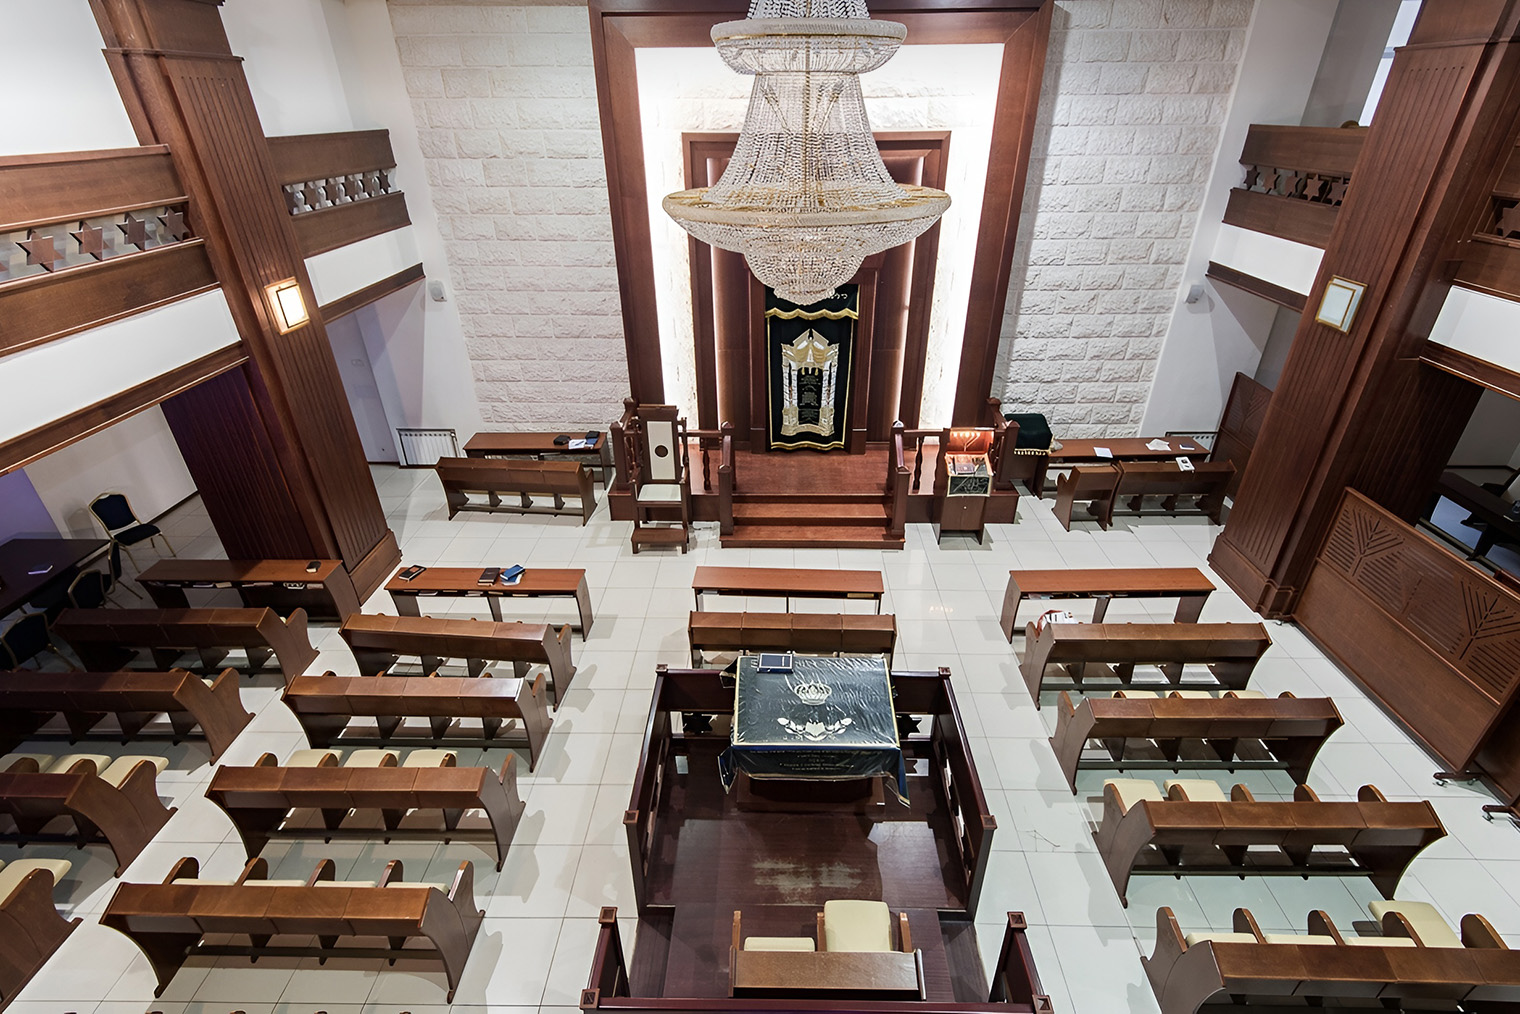 Нижегородская синагога. Источник: evreinn.tilda.ws